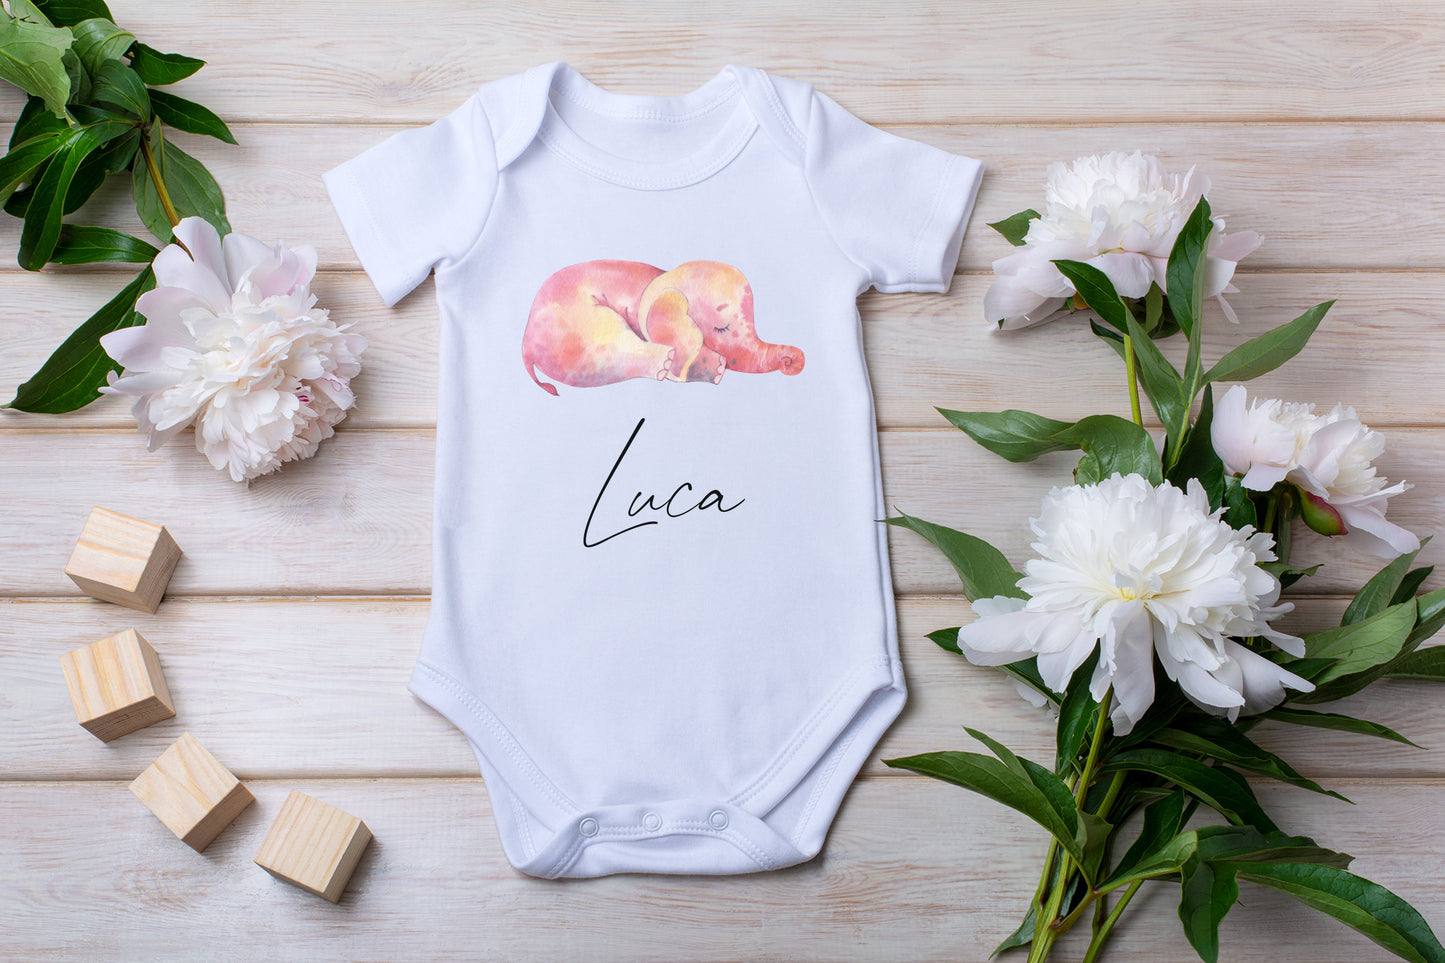 Personalised Babygrow Unisex Vest, Cute Sleeping Elephant With Name, Custom Clothing, Baby, Girls, Boys